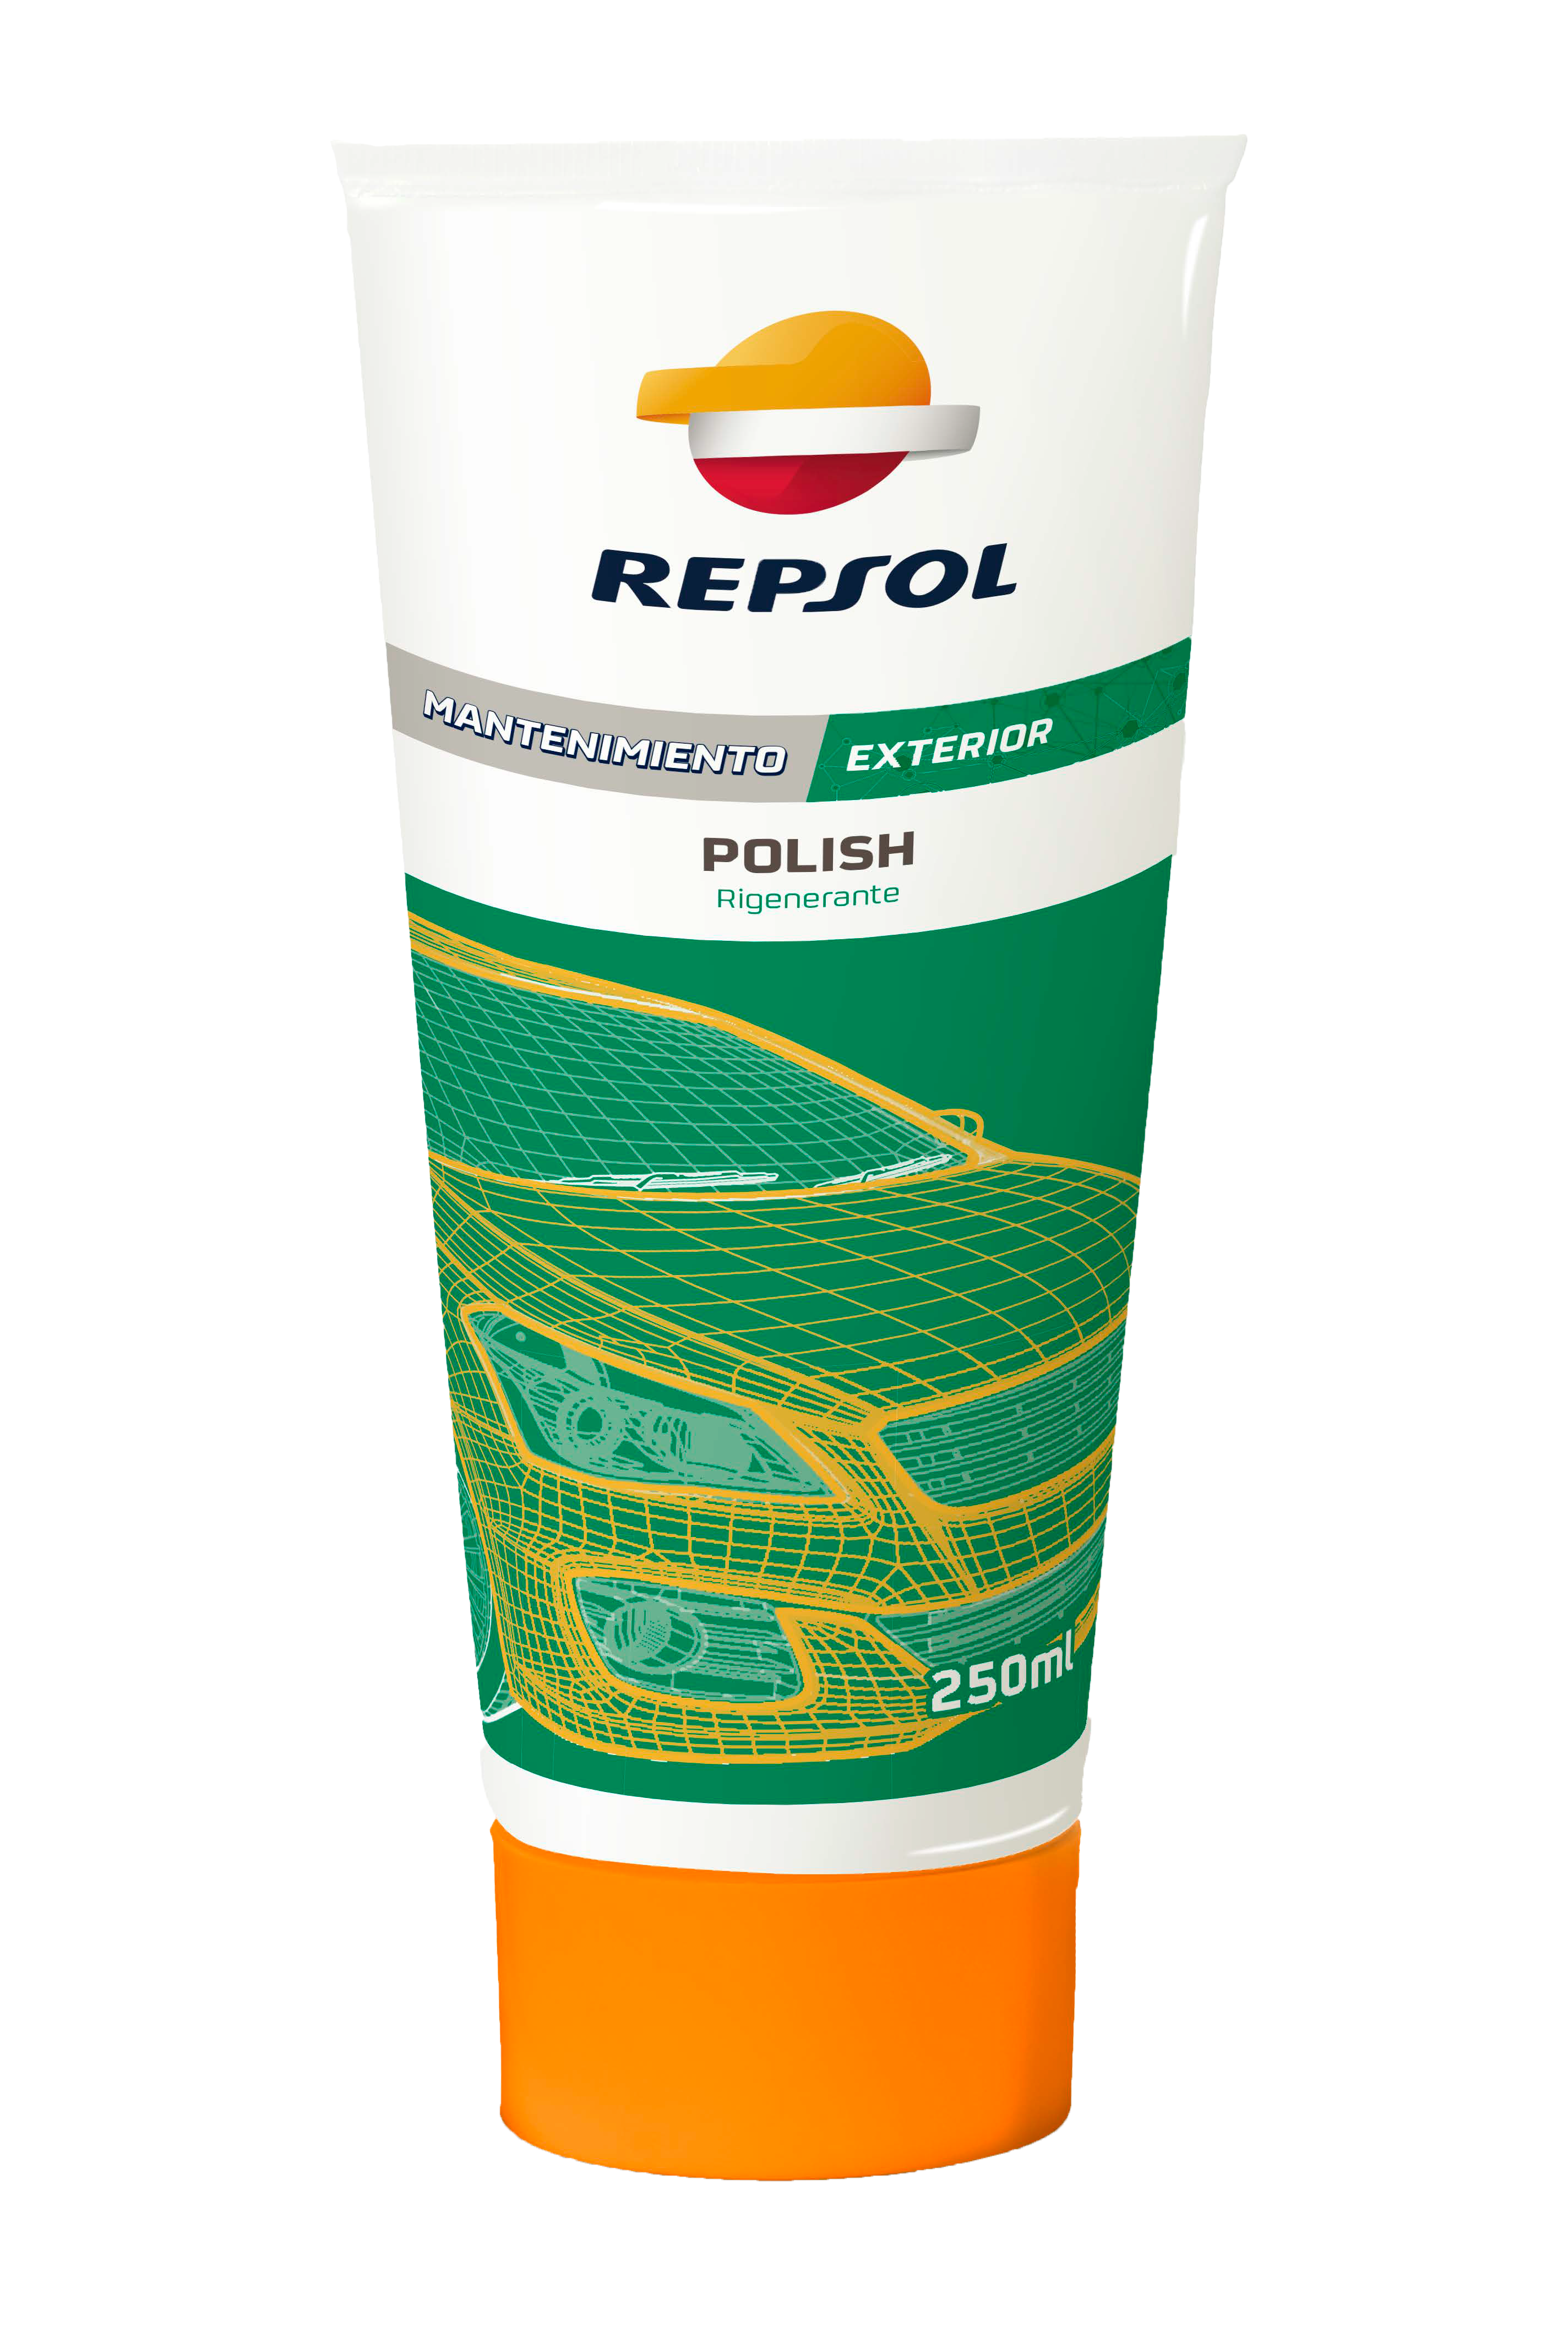 Repsol Polish